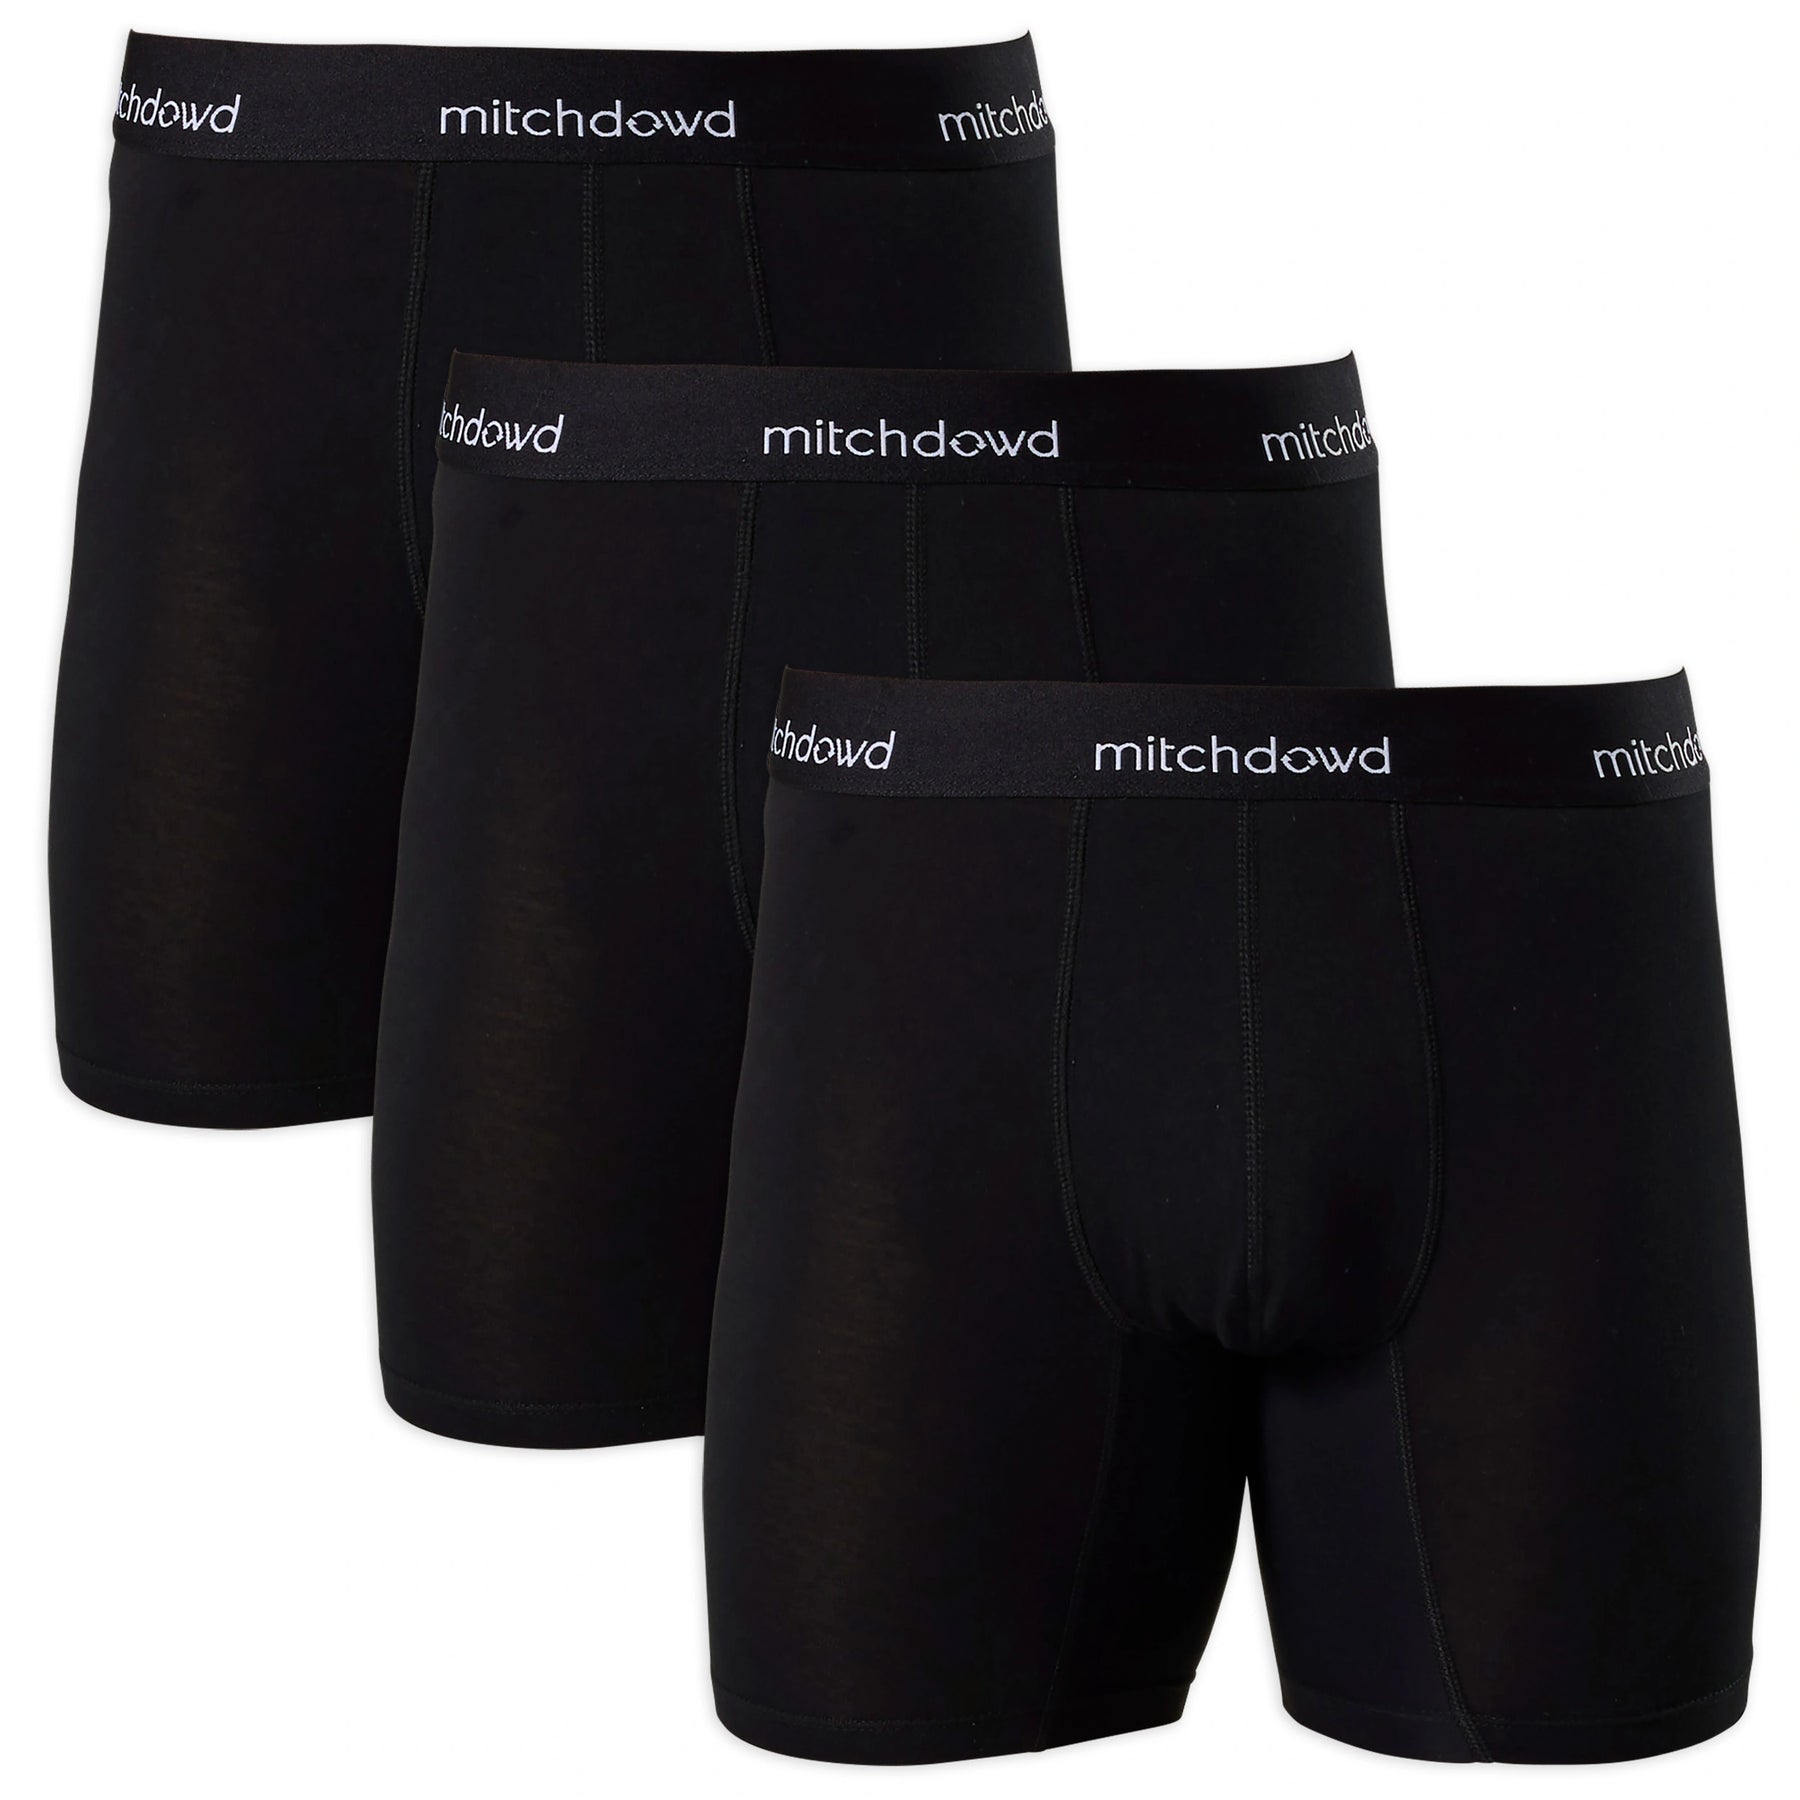 Mens Underwear - Buy Men's Underwear Online in Australia | Mitch Dowd